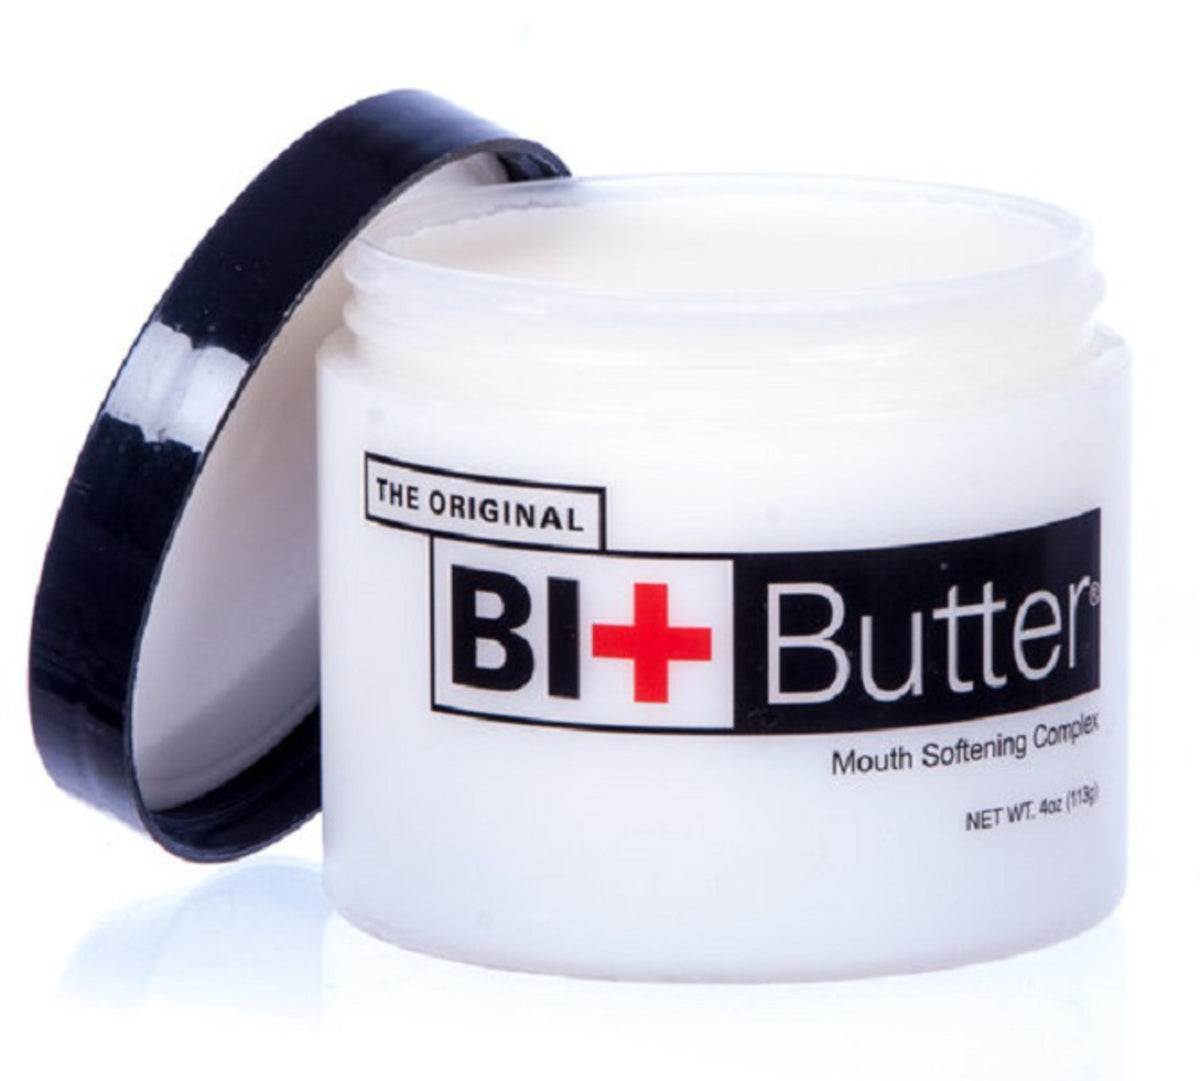 Original Bit Butter®